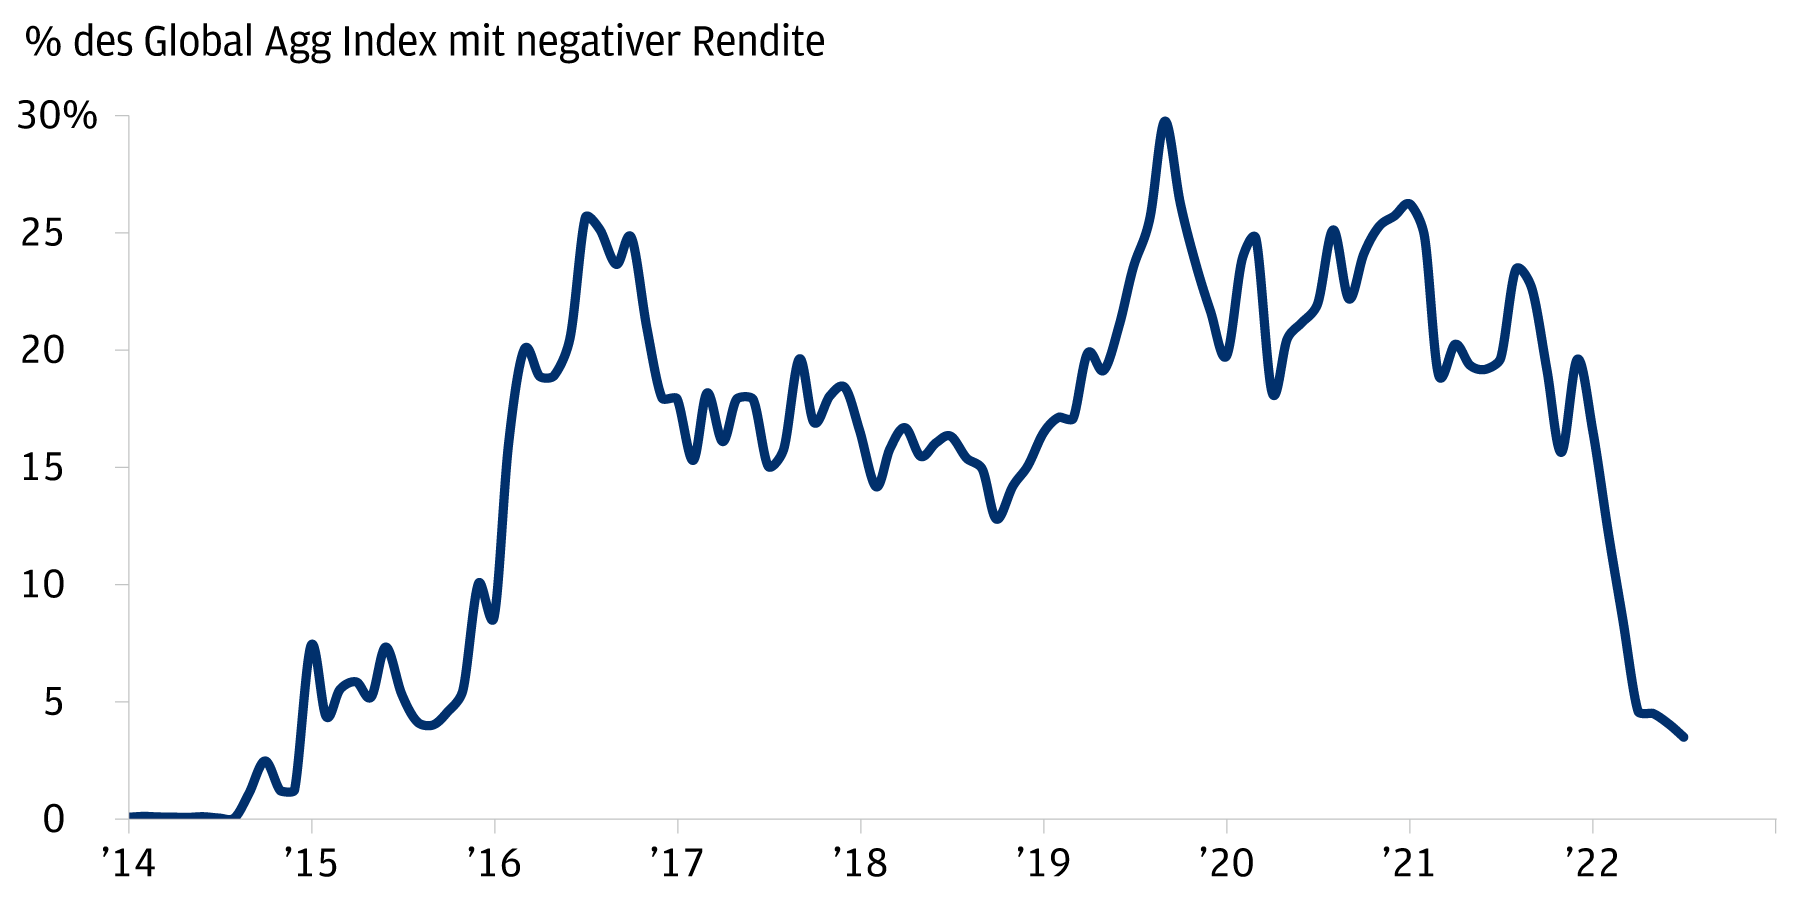 Dieses Diagramm zeigt den Anteil negativ rentierender Anleihen im Bloomberg Global Agg Index von 2014 bis 2022. Er begann bei knapp 0 % und stieg dann auf 7,4 % im Dezember 2014 und 25,7 % im Juni 2016. Er fiel im September 2018 auf 12,8 %, bevor er im August 2019 wieder auf ein Serienhoch von 29,8 % anstieg. Von dort fiel er auf 18,2 % im März 2020 und 4,5 % im April 2022.